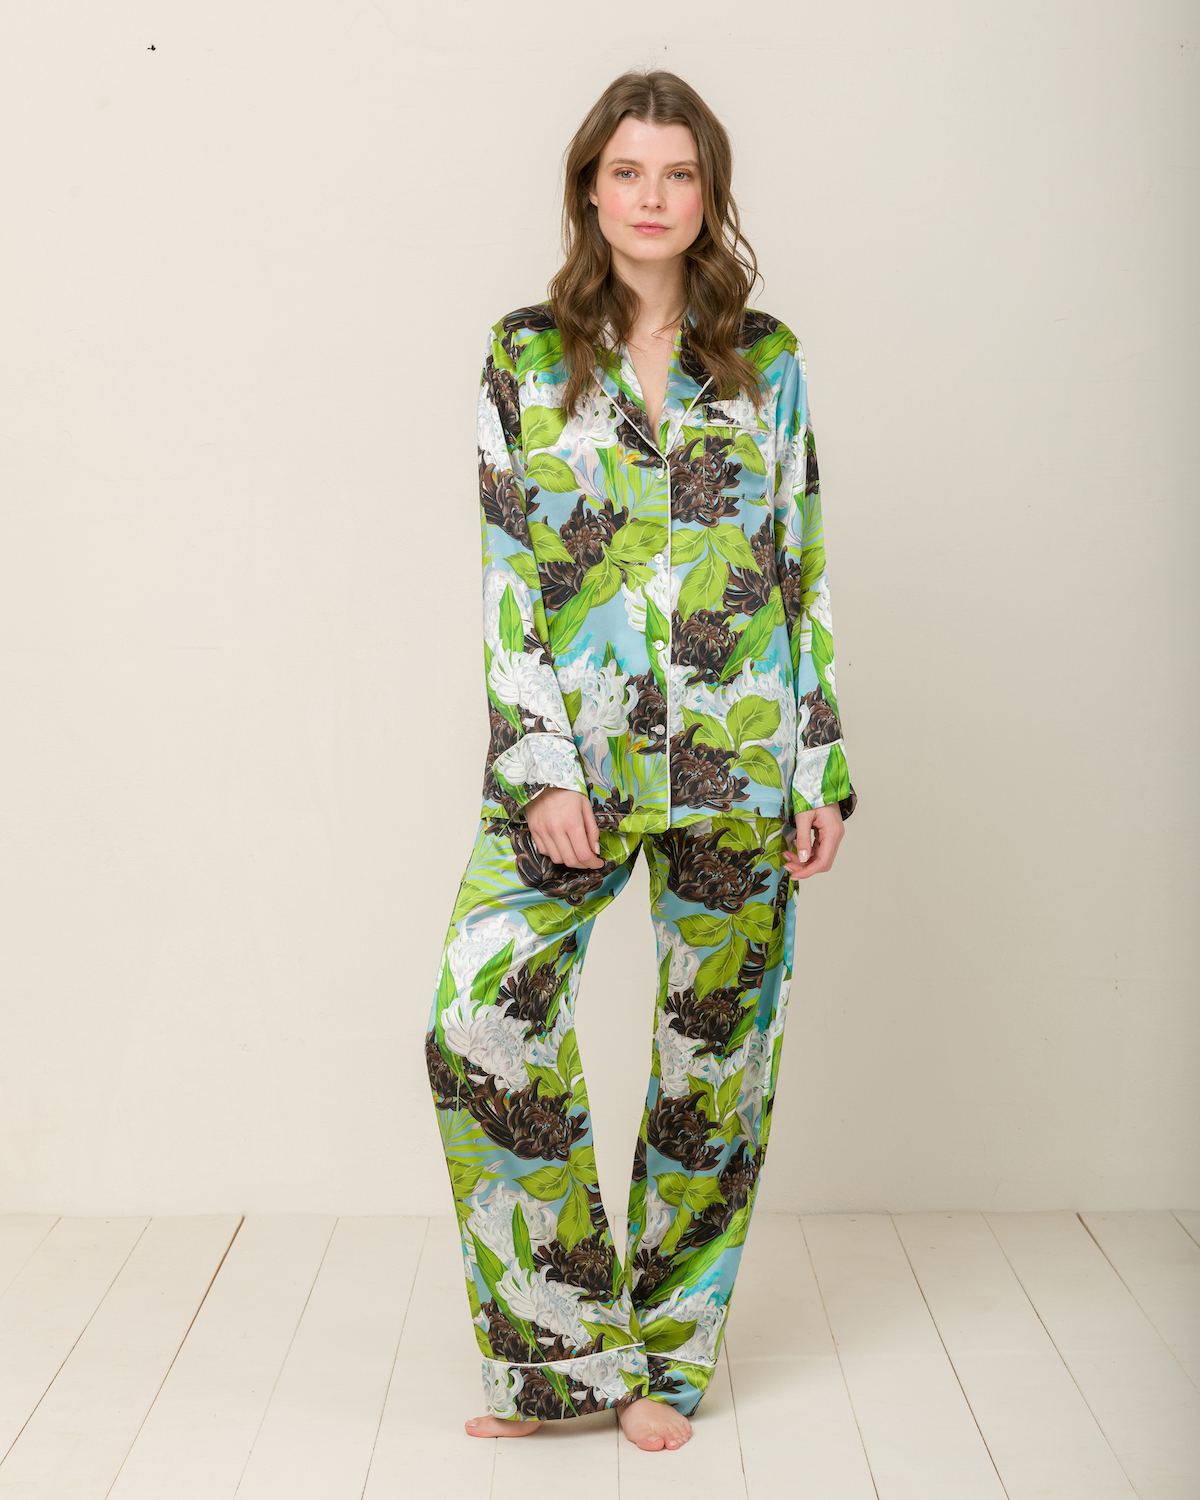 Blättermuster auf einem Pyjama von Radice aus Seide